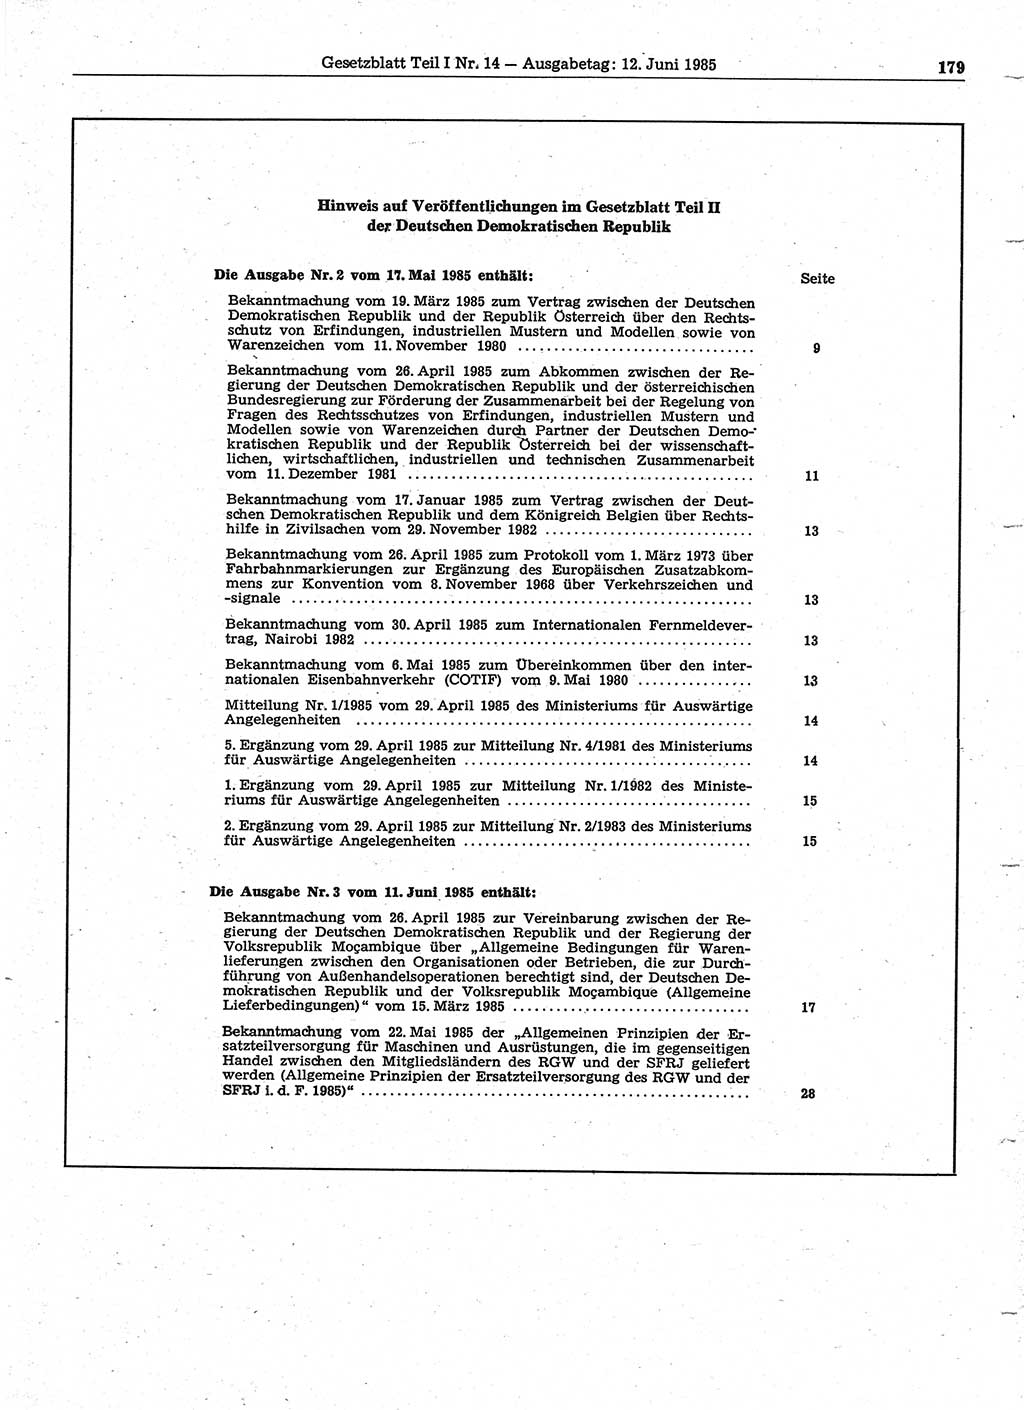 Gesetzblatt (GBl.) der Deutschen Demokratischen Republik (DDR) Teil Ⅰ 1985, Seite 179 (GBl. DDR Ⅰ 1985, S. 179)